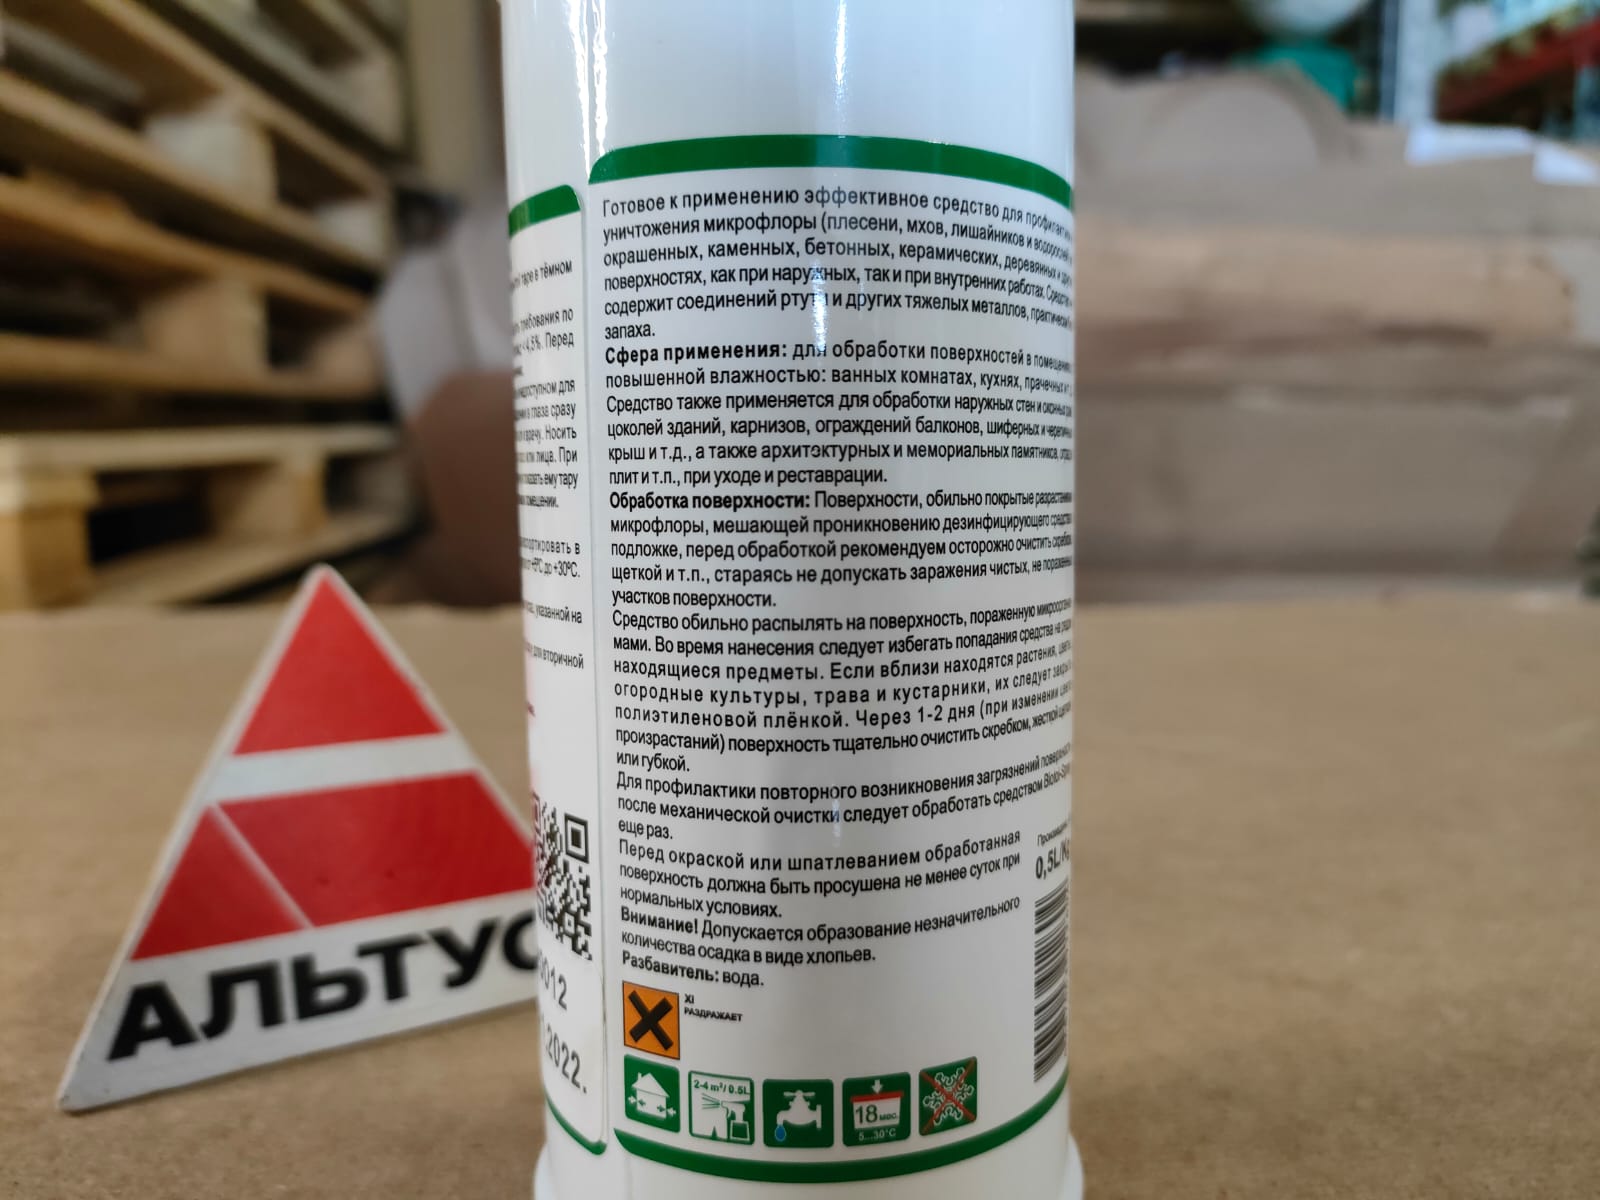 Дезинфицирующее средство против плесени, мхов, лишайников и водорослей 0,5 л Eskaro Biotol Spray